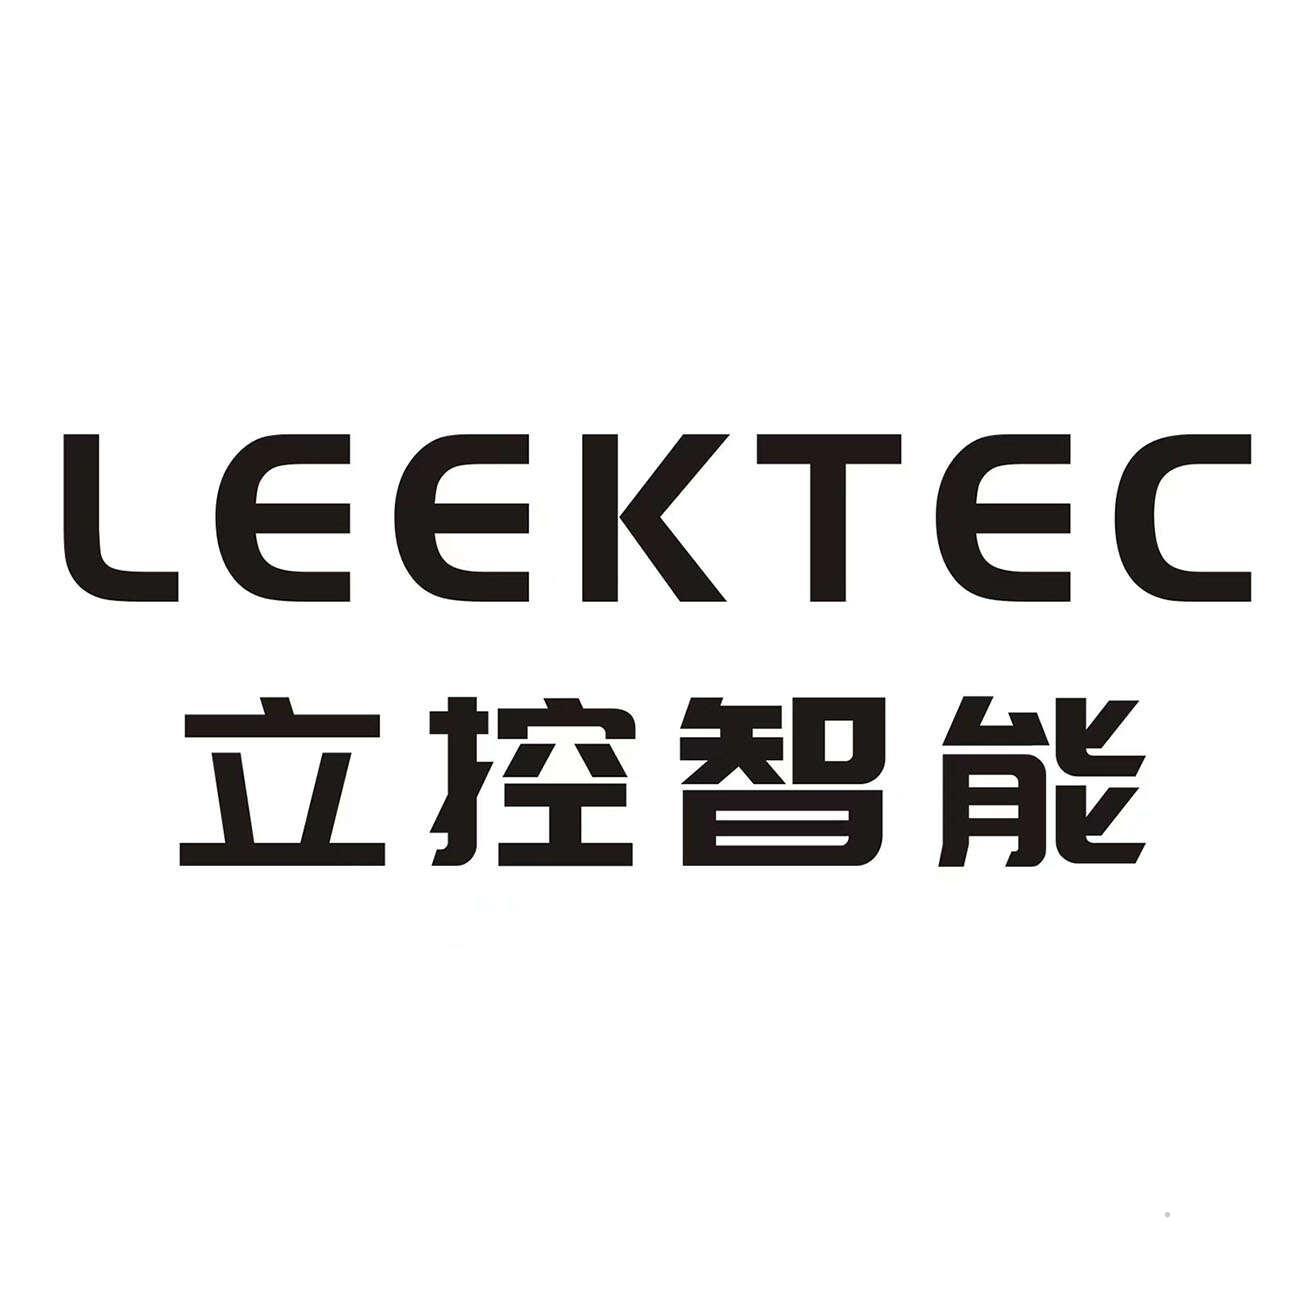 LEEKTEC 立控智能logo